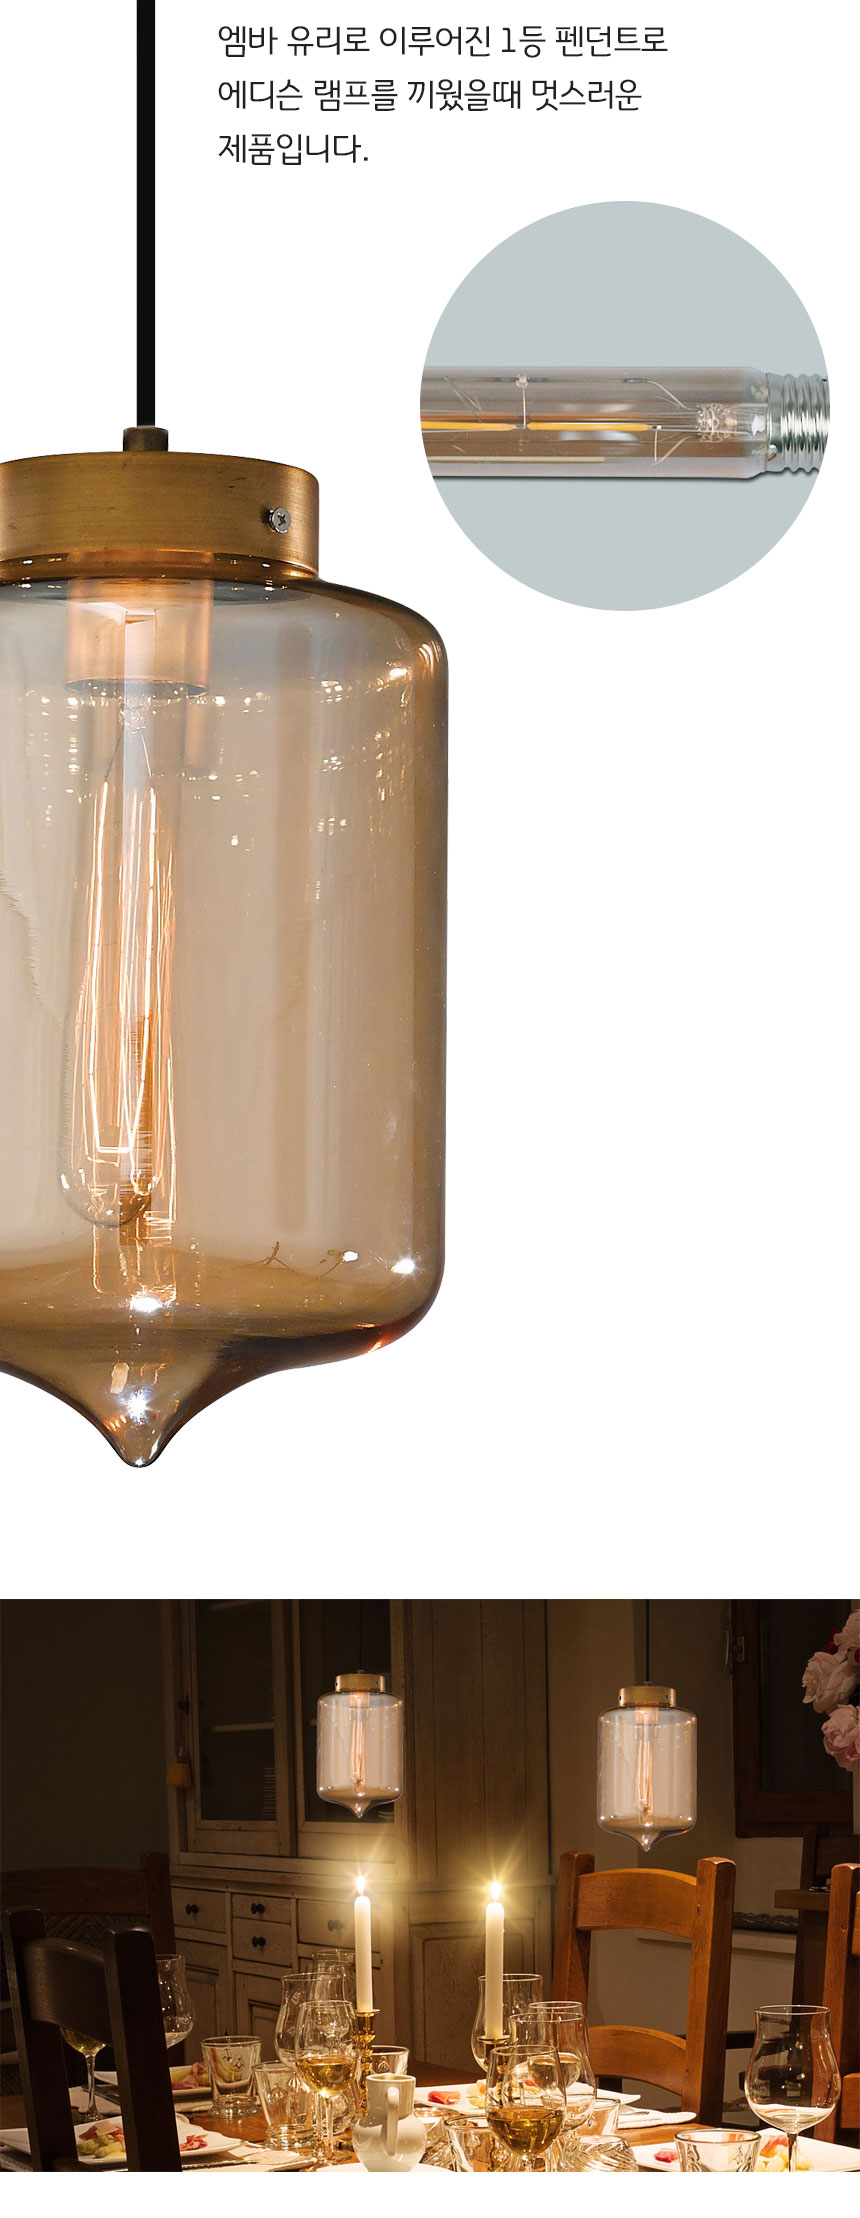 엠바 유리로 이루어진 1등 펜던트로
에디슨 램프를 끼웠을때 멋스러운 
제품입니다.